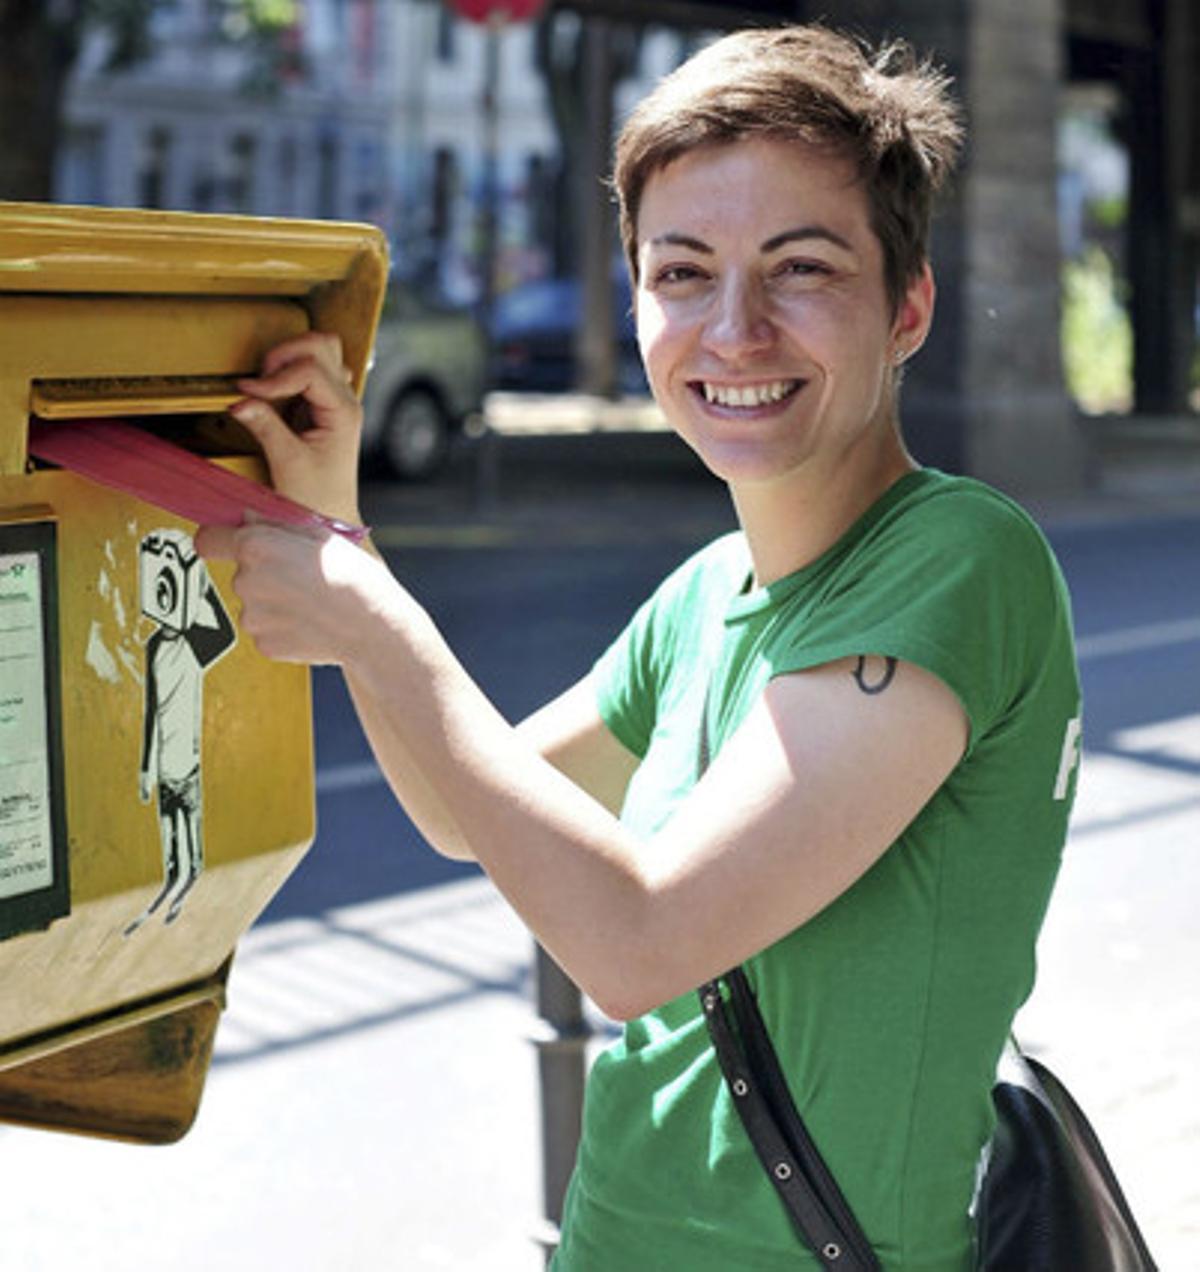 La líder de la candidatura Green-EFA, Ska Keller, vota per correu a la ciutat de Berlín.